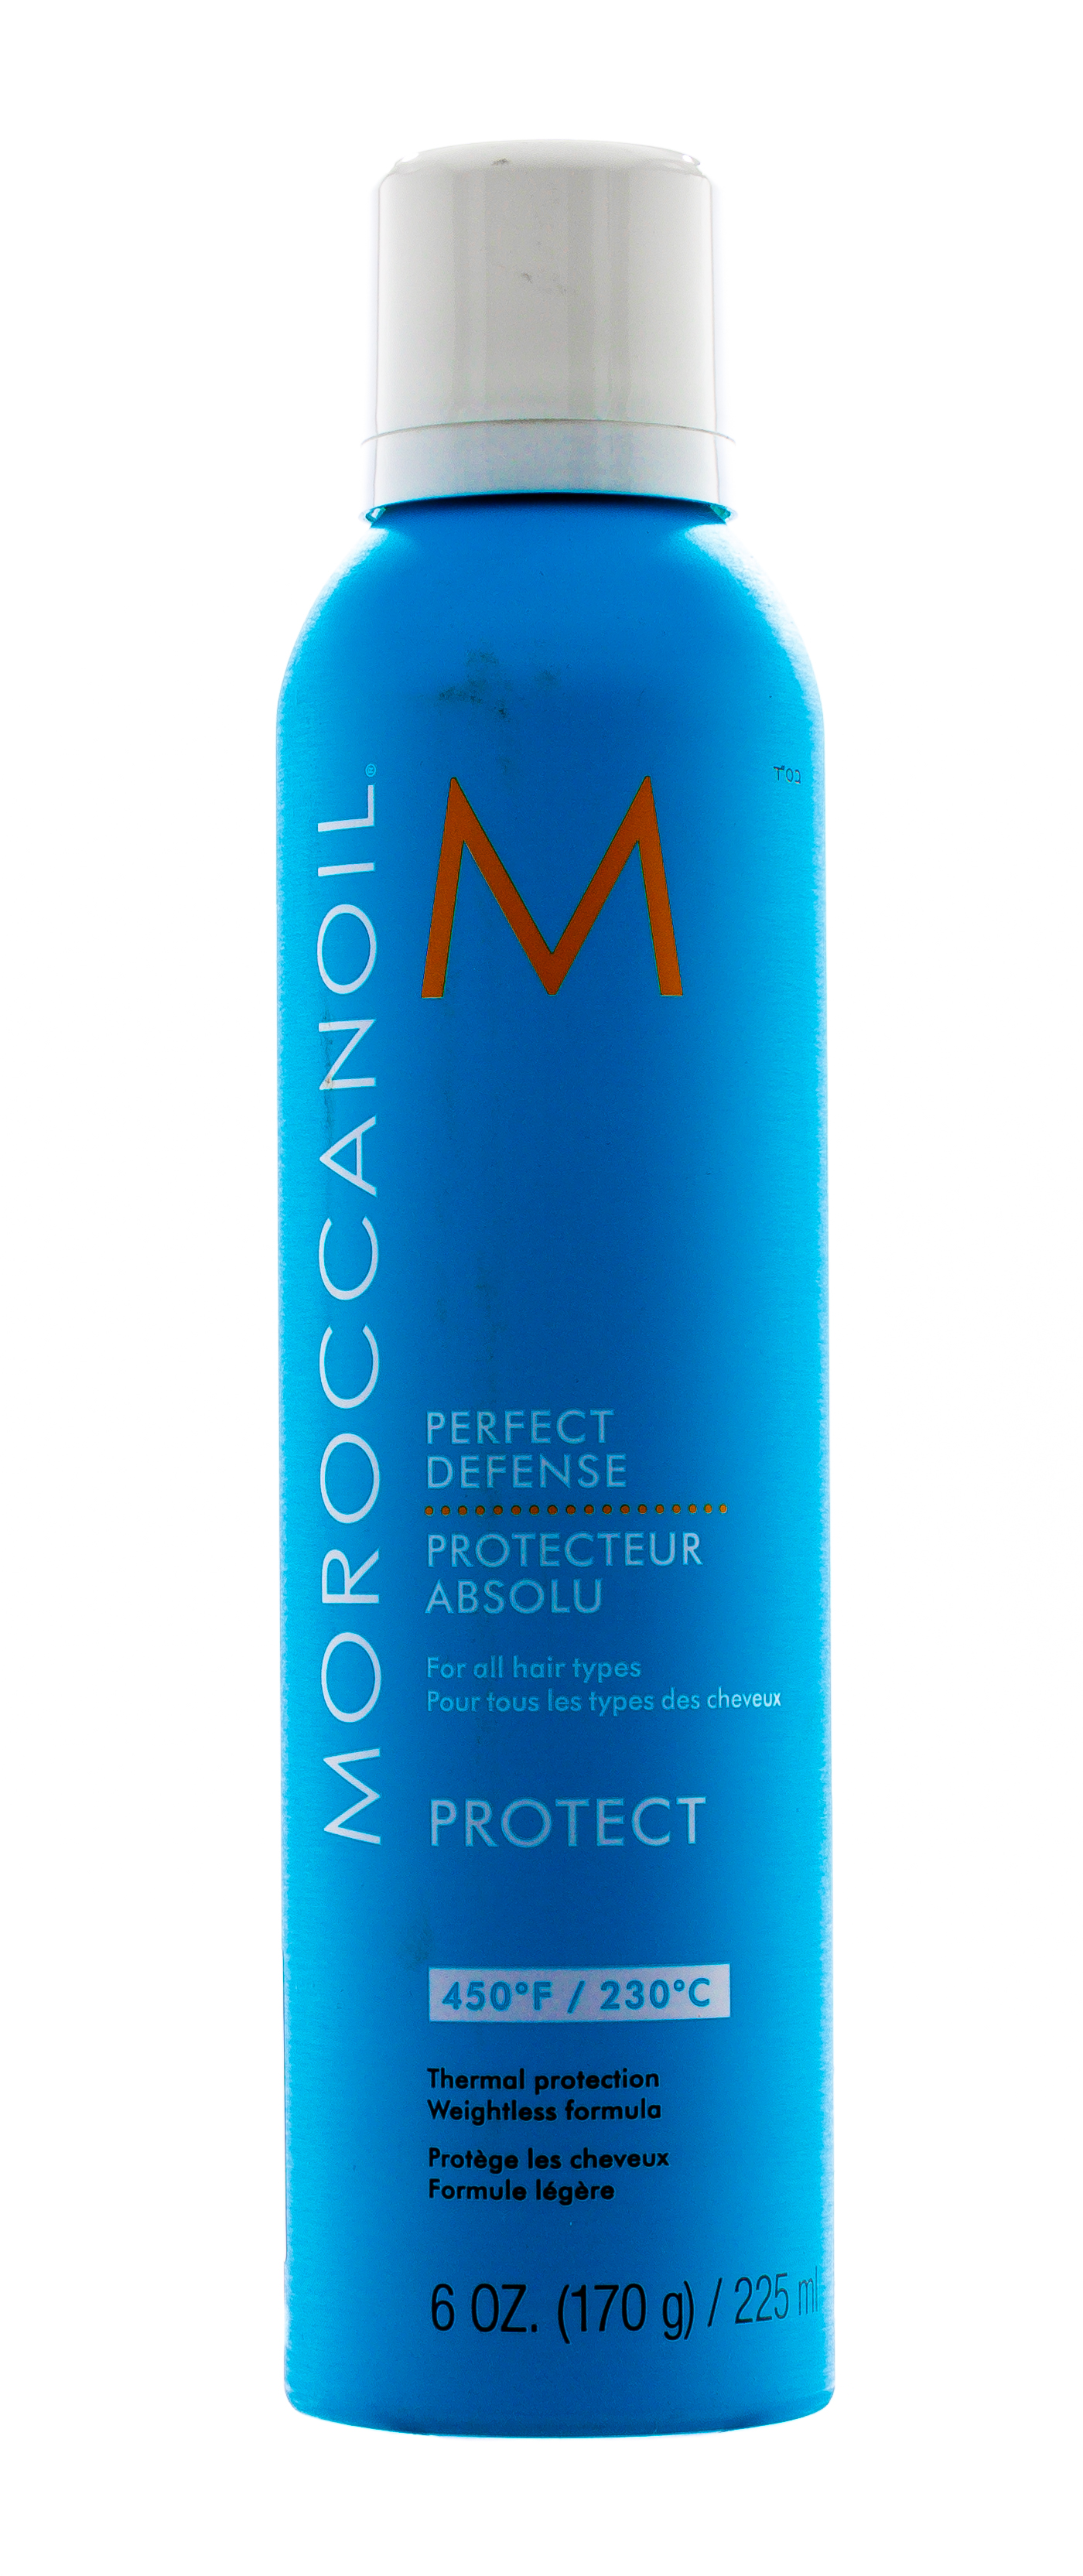 Moroccanoil Лосьон-спрей для волос Идеальная защита, 225 мл (Moroccanoil, Styling & Finishing) идеальная защита защита 225 мл moroccanoil